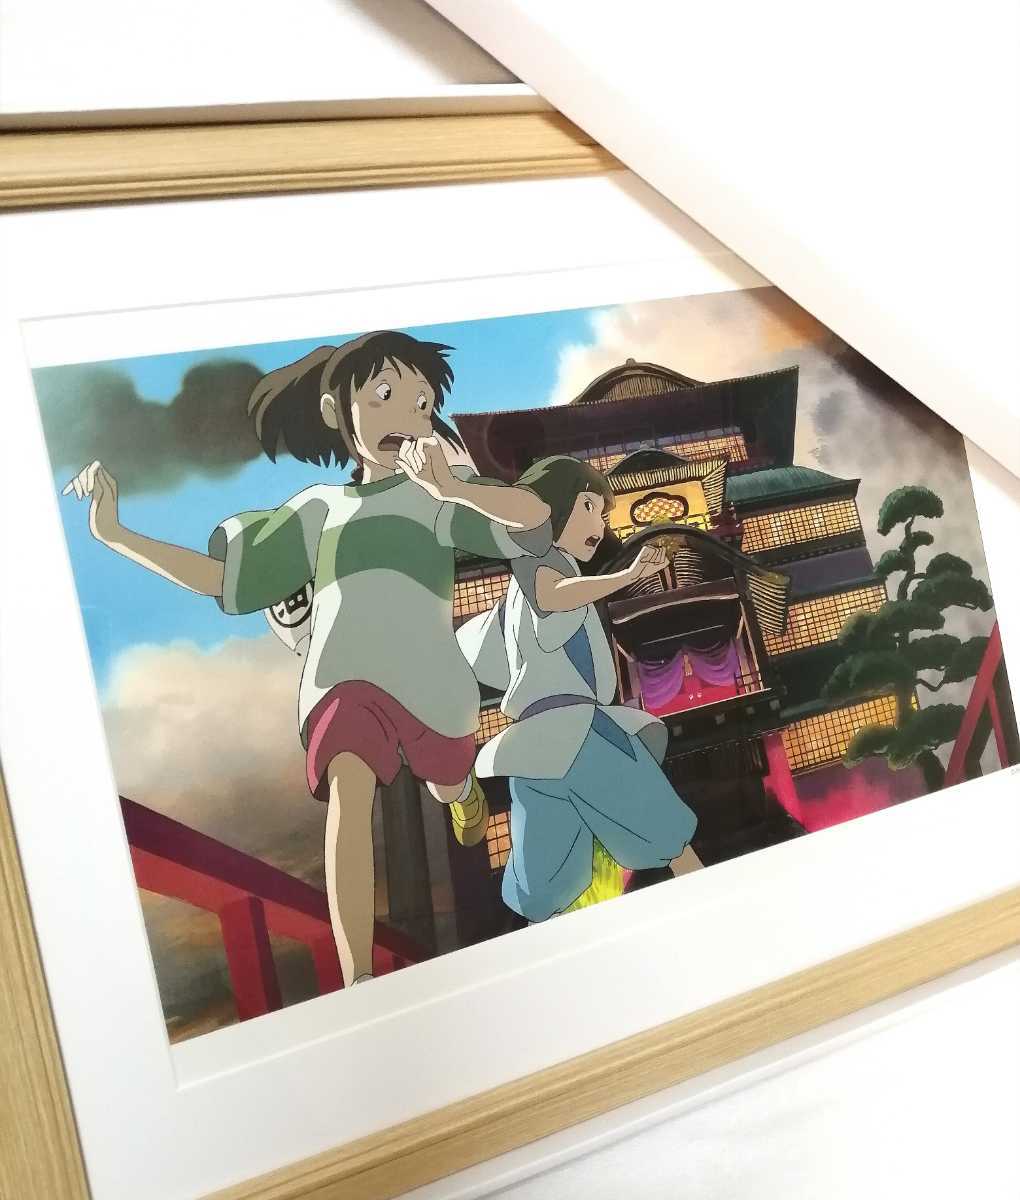 슈퍼 레어! 스튜디오 지브리 센과 치히로의 행방불명 [액자] 지브리 포스터(검사) 지브리 그림 원본 복제 엽서. 지브리 달력. 미야자키 하야오, 만화, 애니메이션 상품, 다른 사람